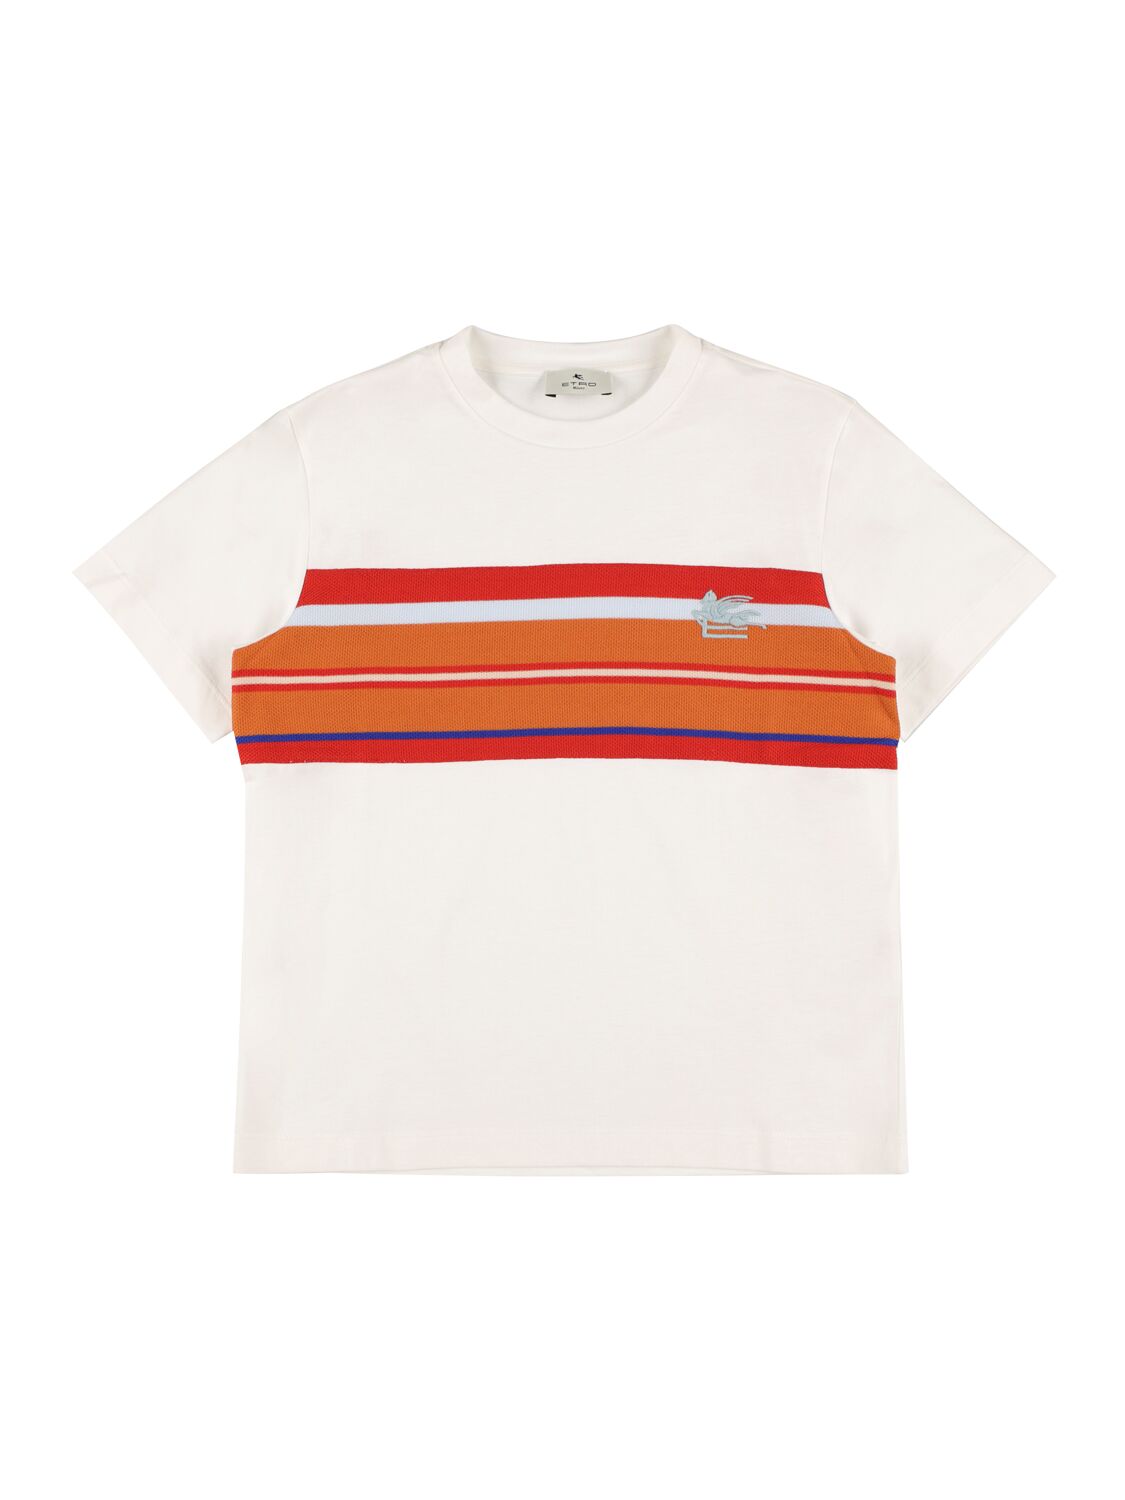 Etro Kids' Cotton Jersey T-shirt In Ivory,orange